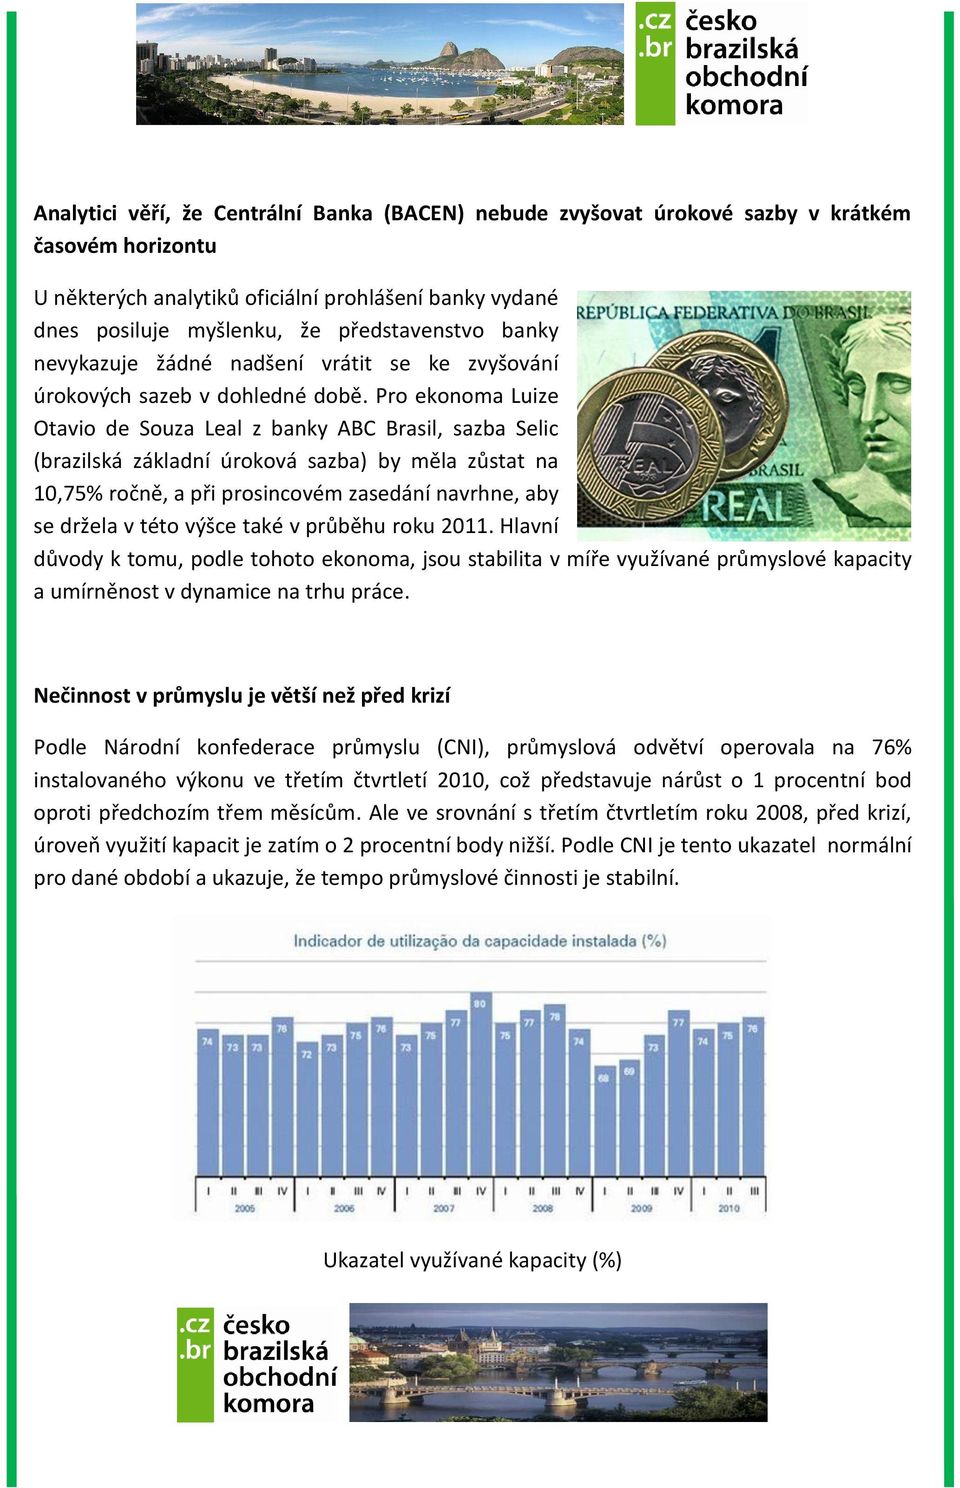 Pro ekonoma Luize Otavio de Souza Leal z banky ABC Brasil, sazba Selic (brazilská základní úroková sazba) by měla zůstat na 10,75% ročně, a při prosincovém zasedání navrhne, aby se držela v této